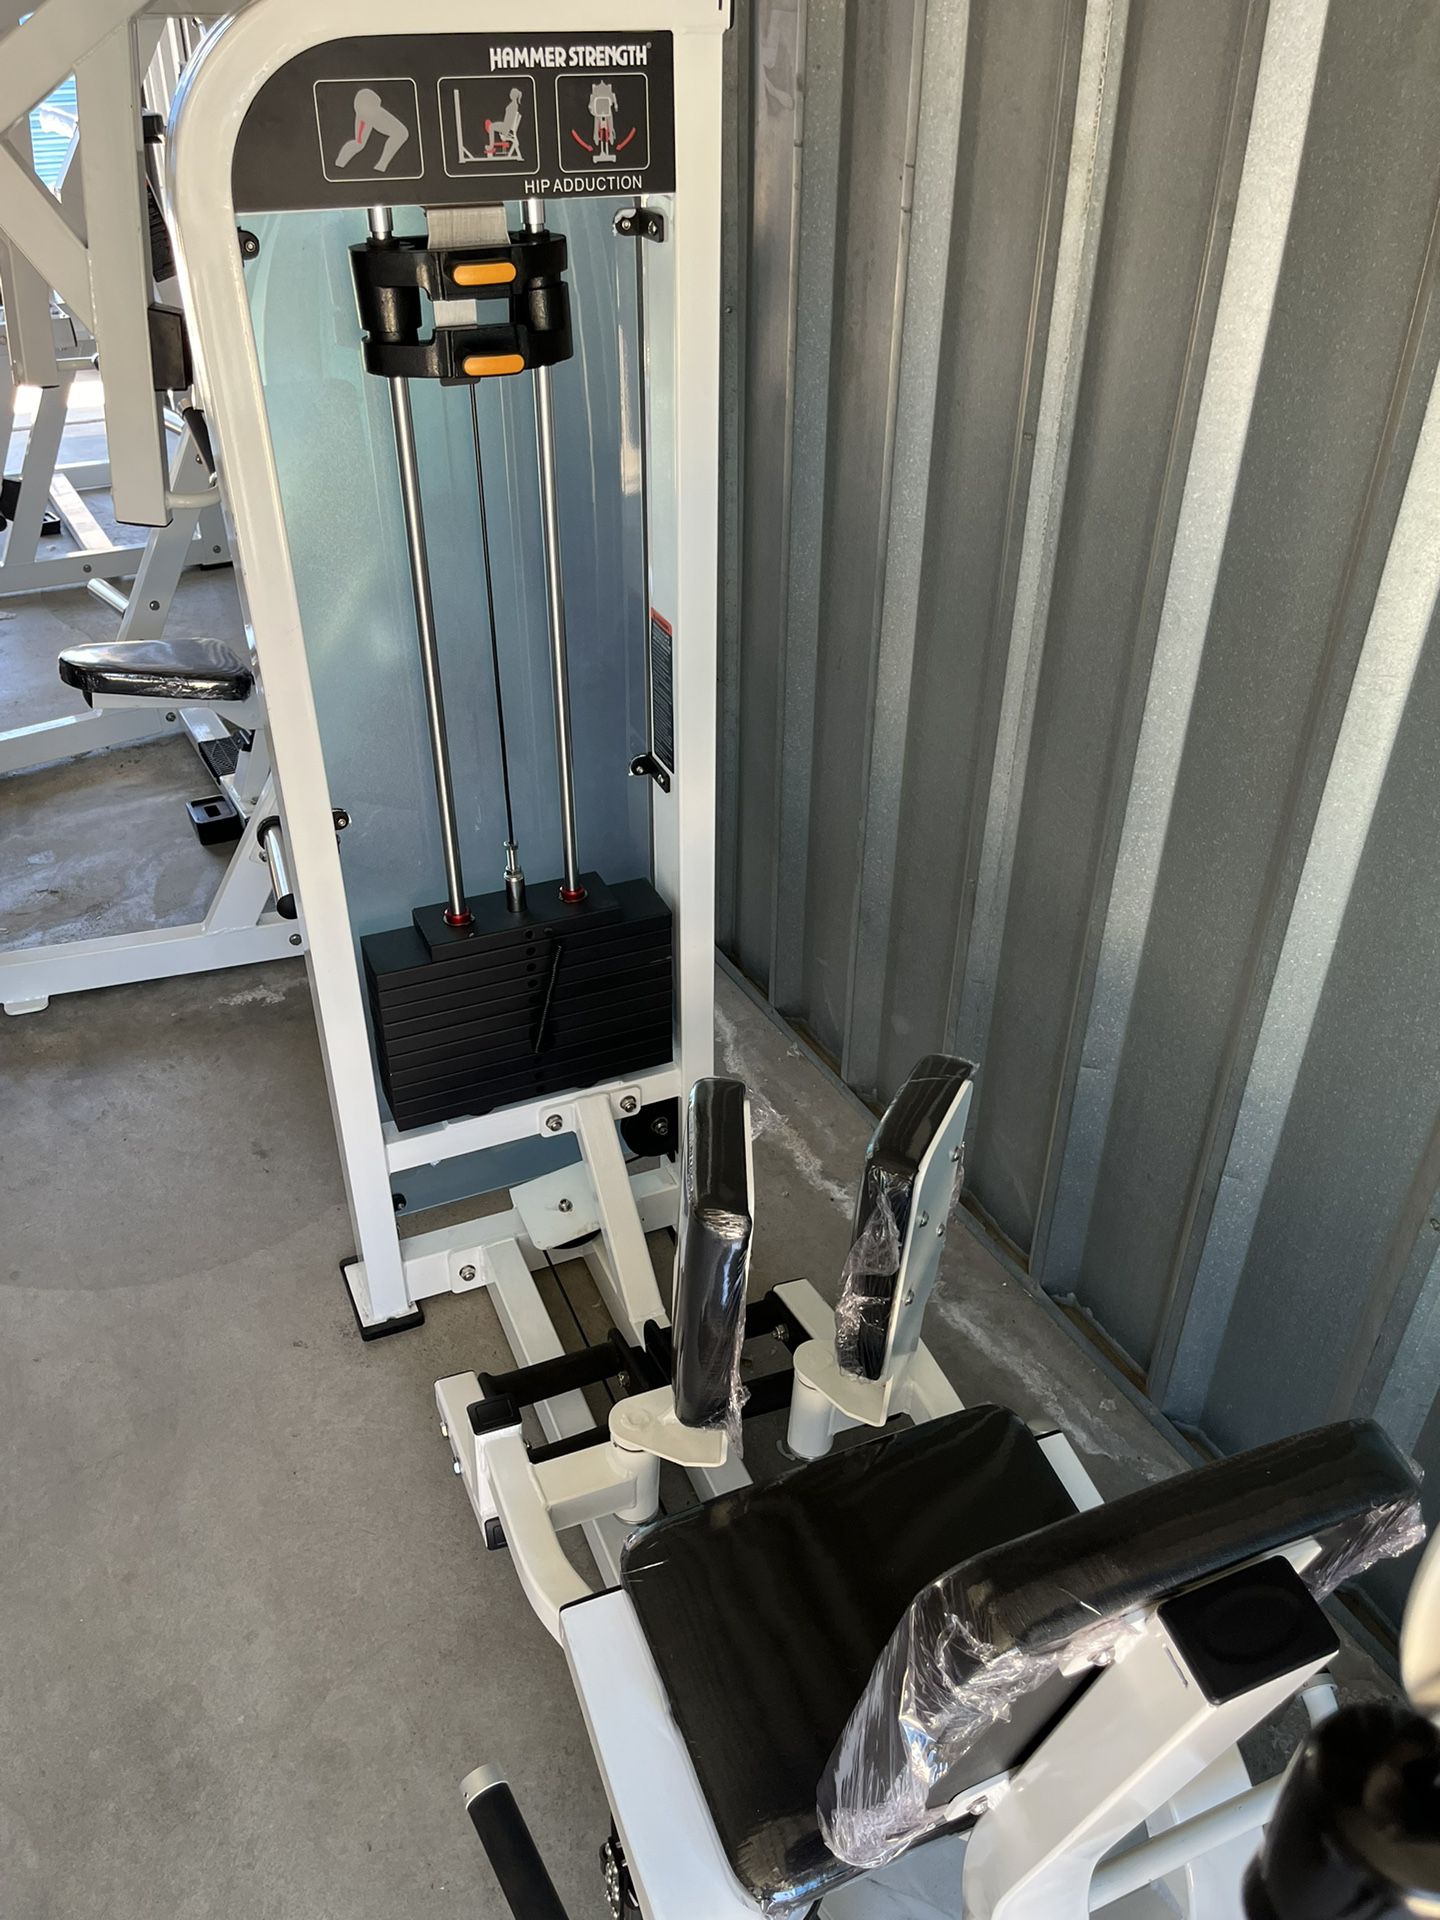 Gym equipment/machines —brand new